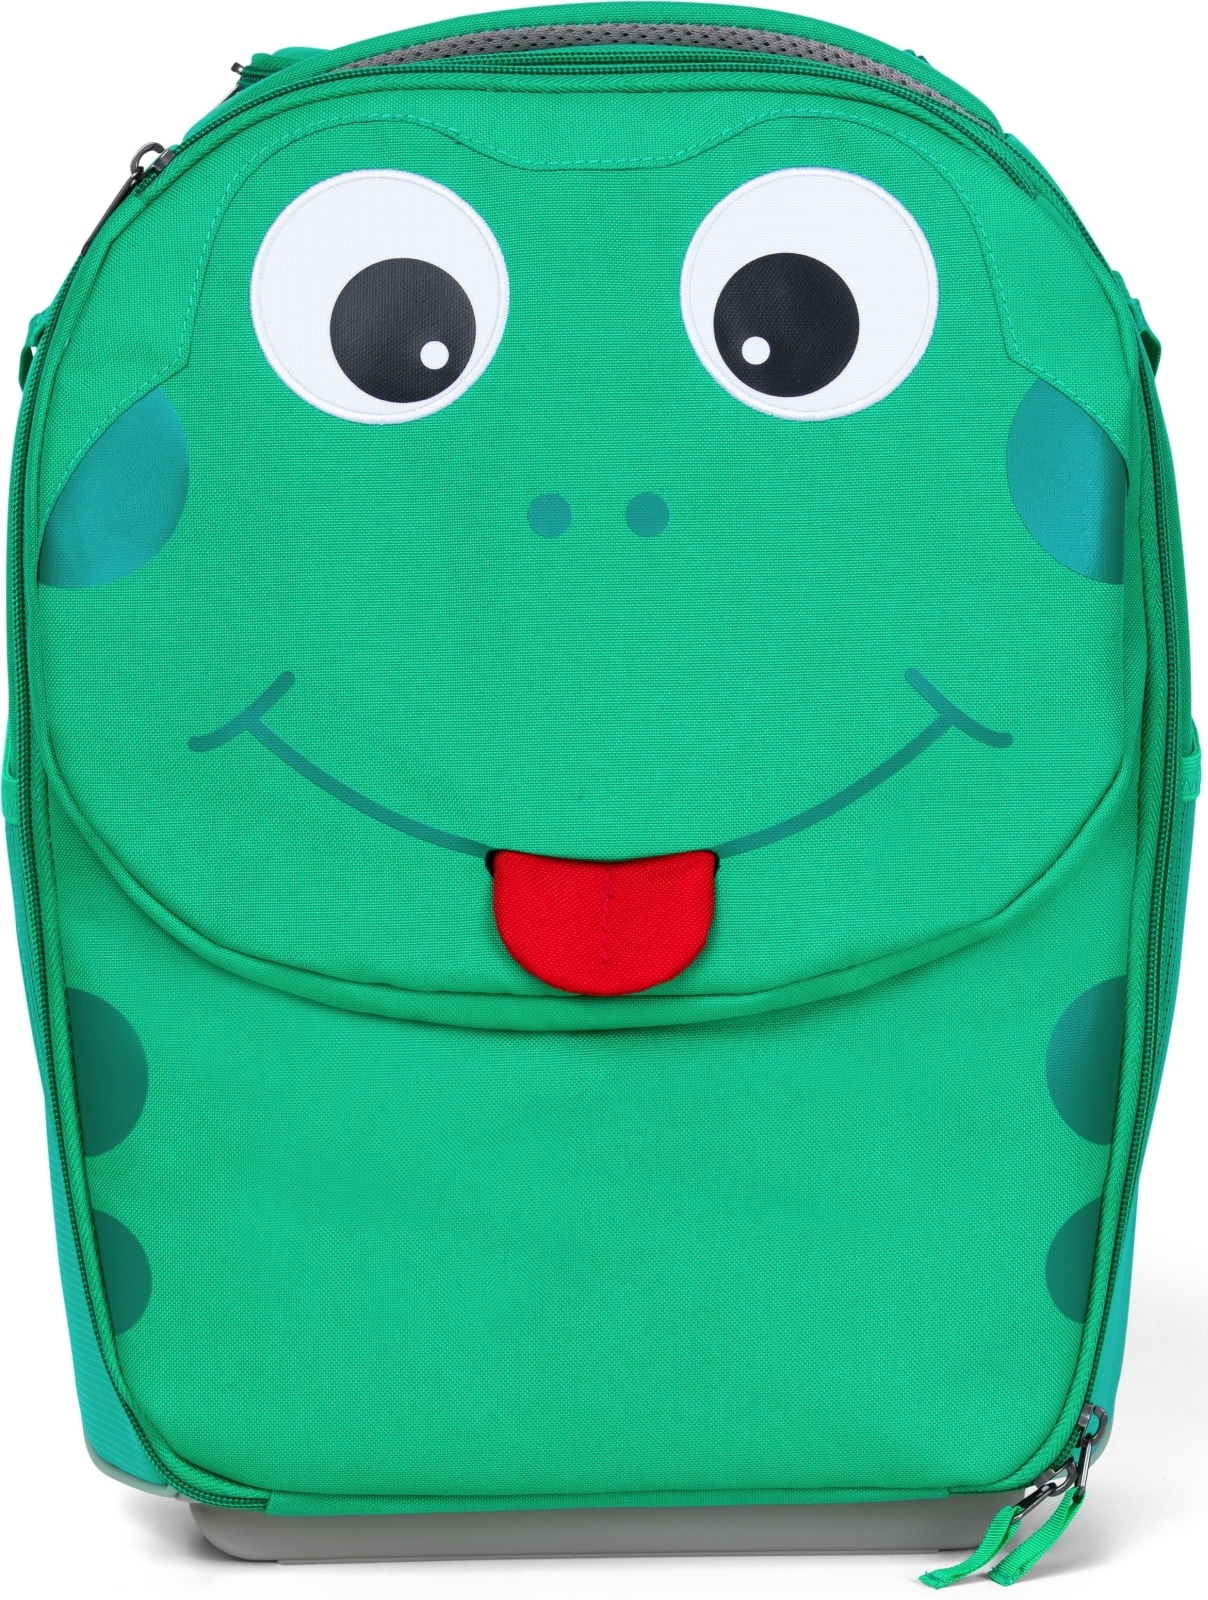 Affenzahn Kids Suitcase Finn Frog - green